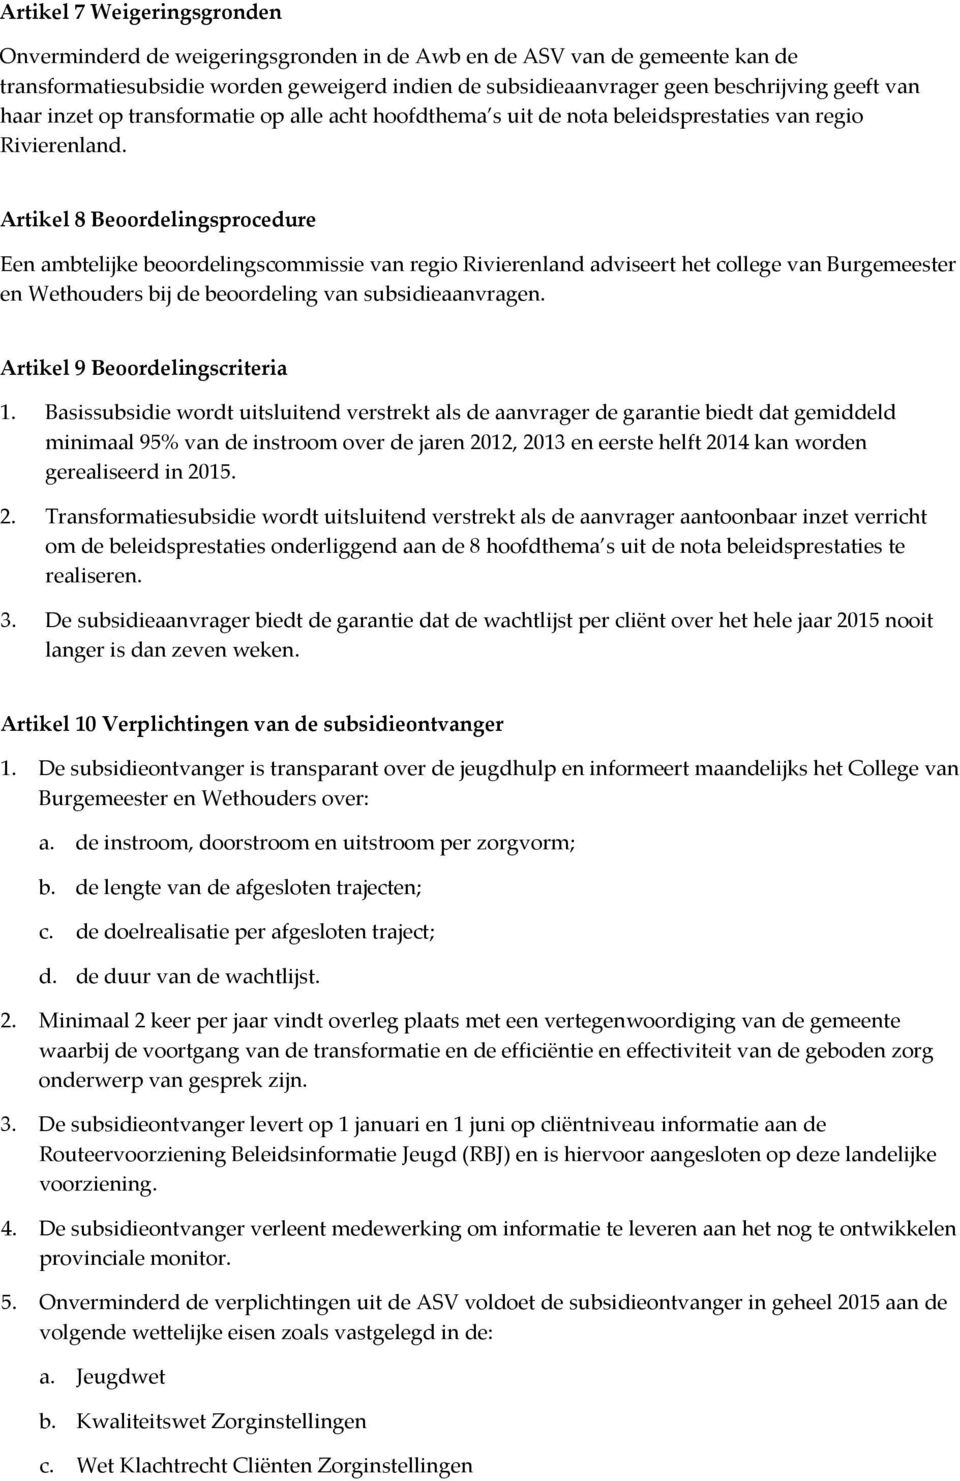 Artikel 8 Beoordelingsprocedure Een ambtelijke beoordelingscommissie van regio Rivierenland adviseert het college van Burgemeester en Wethouders bij de beoordeling van subsidieaanvragen.